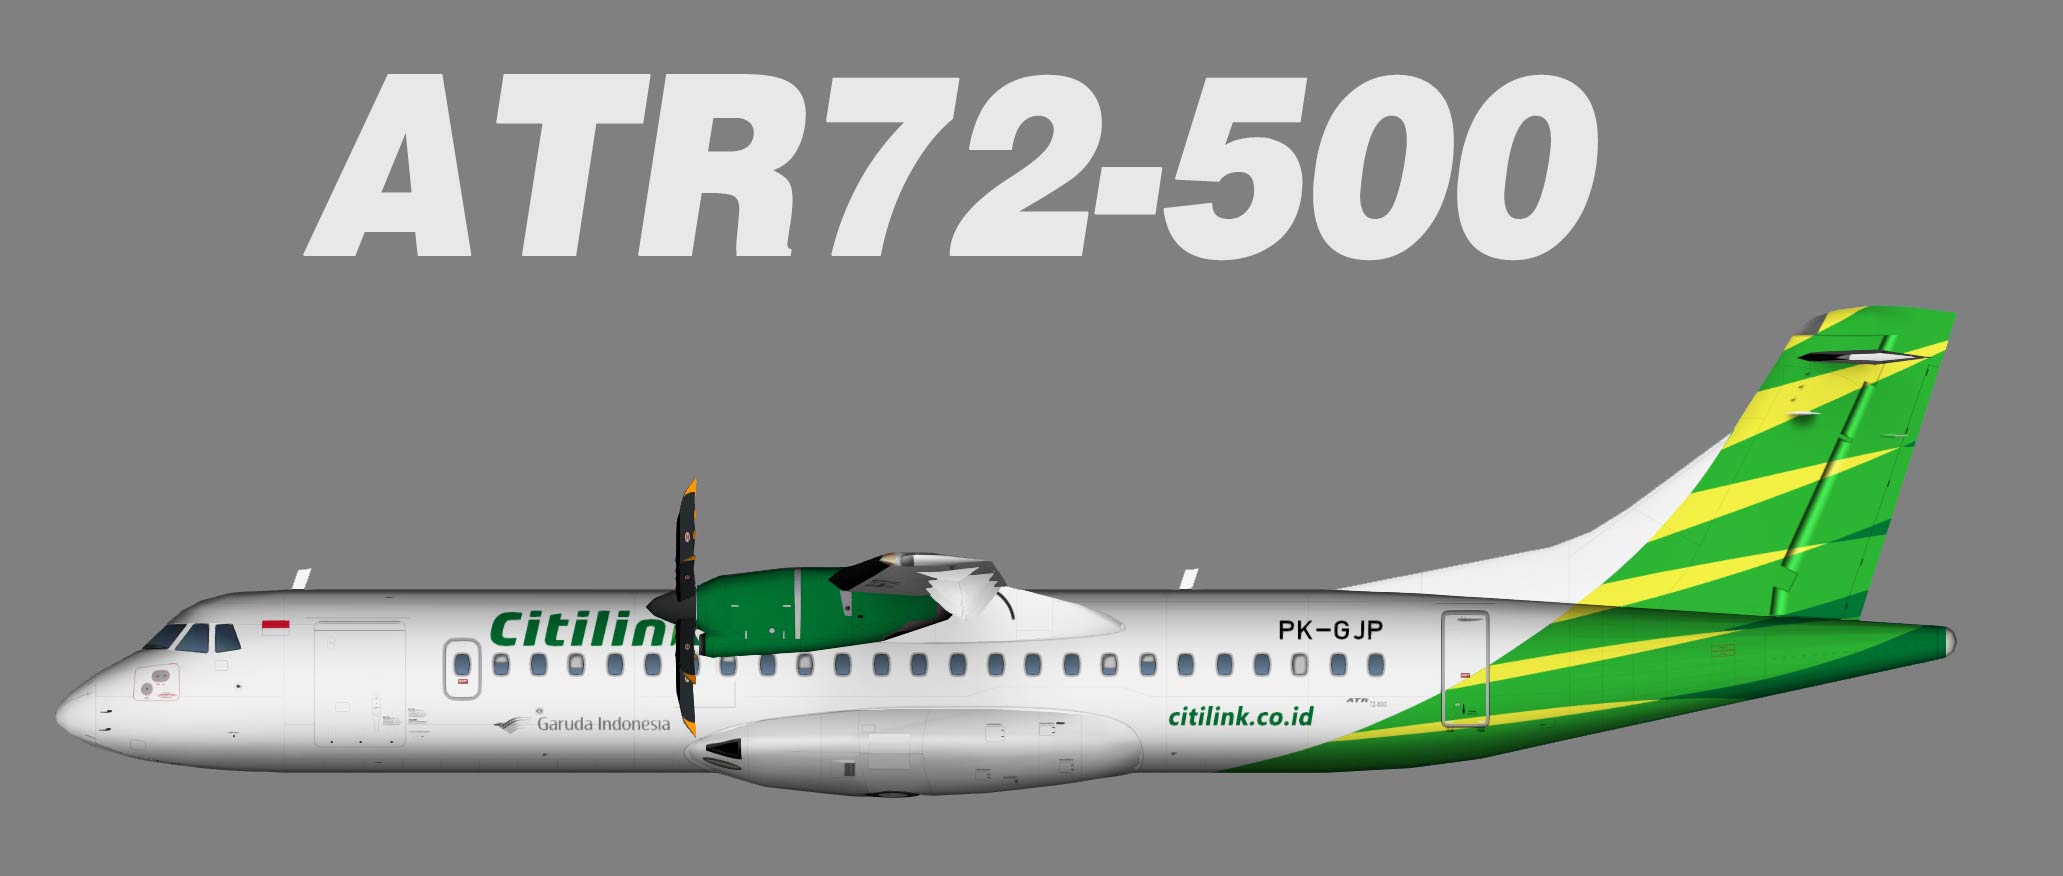 Citilink ATR 72-600